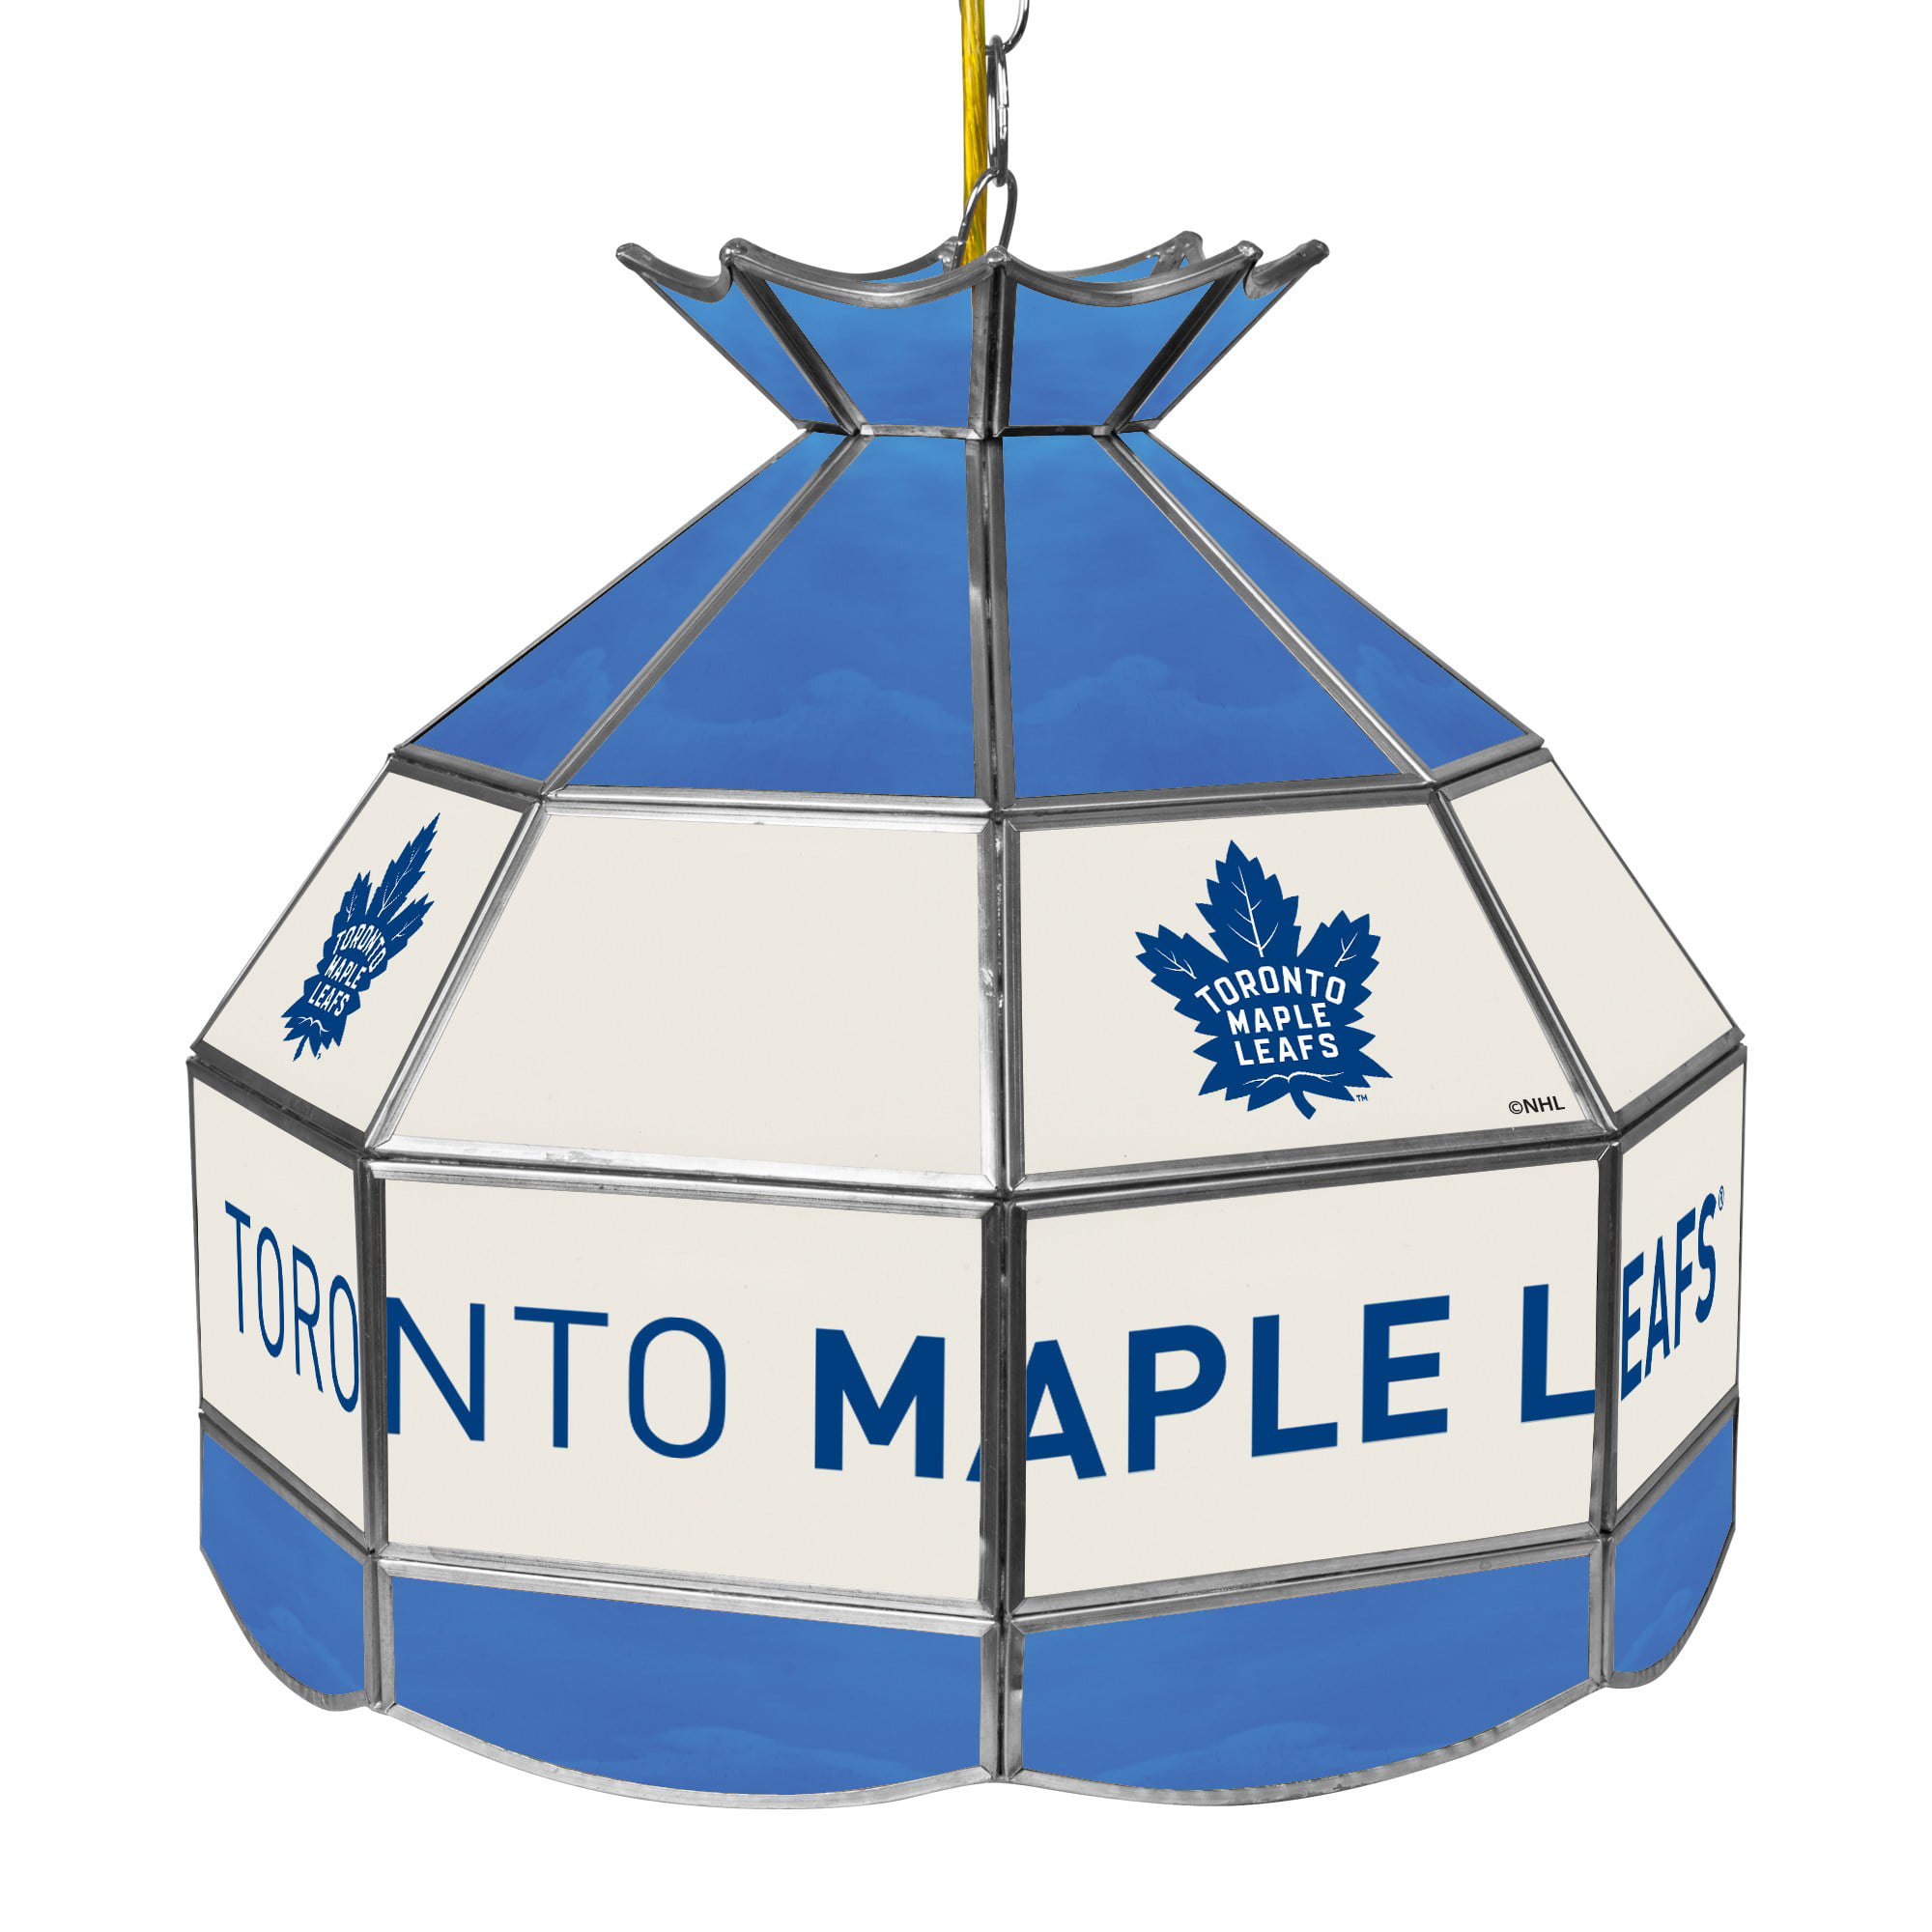 Toronto Maple Leaf 